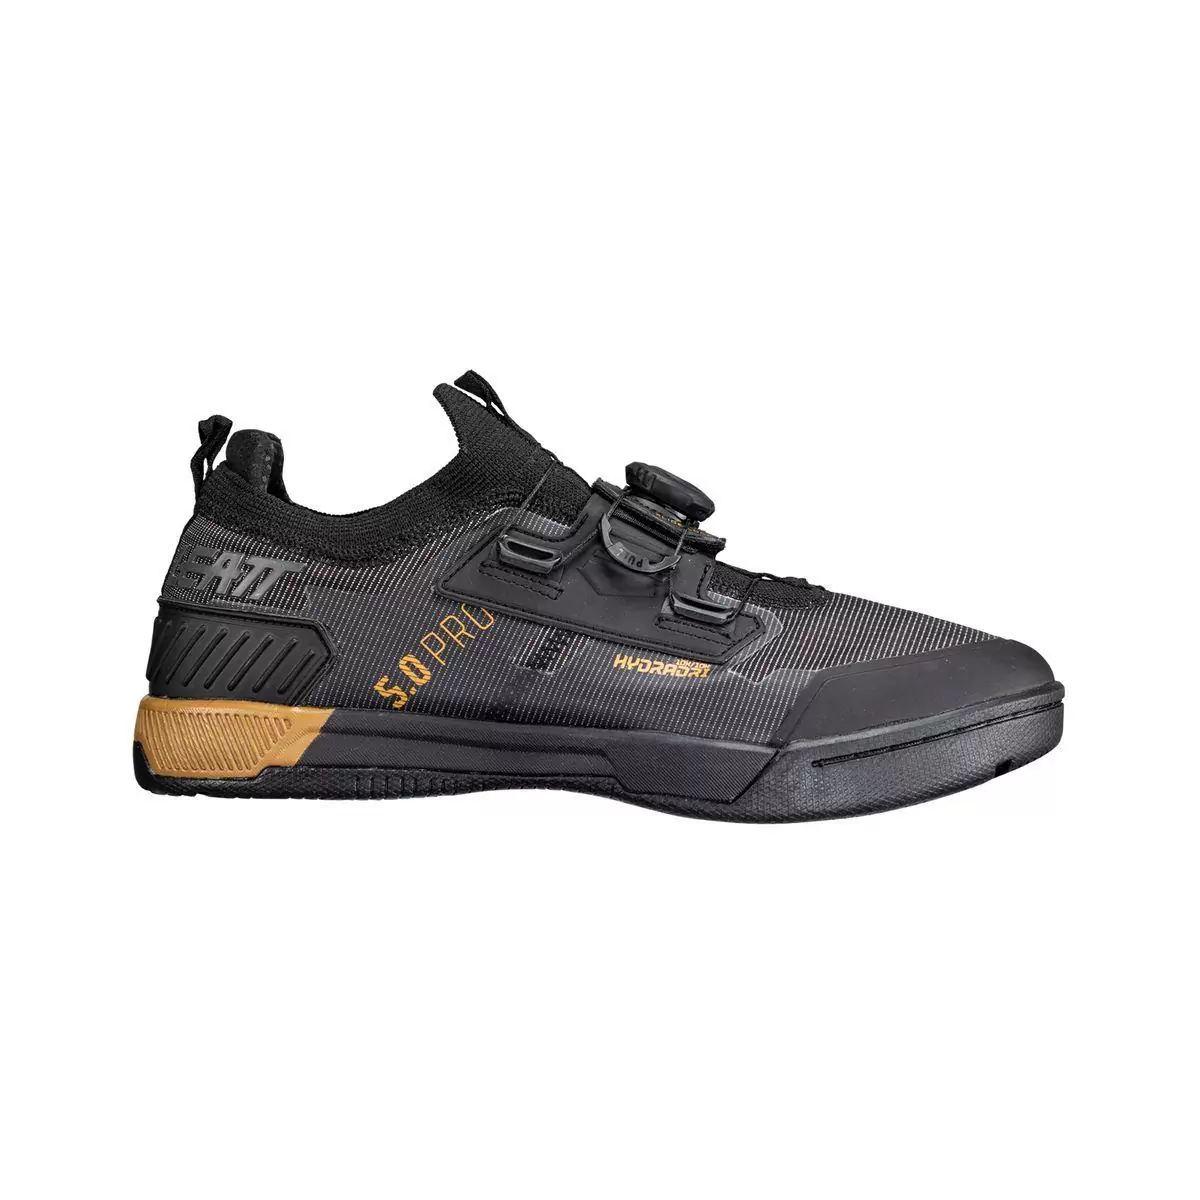 Chaussures VTT imperméables HydraDri ProClip 5.0 noir taille 38,5 #1